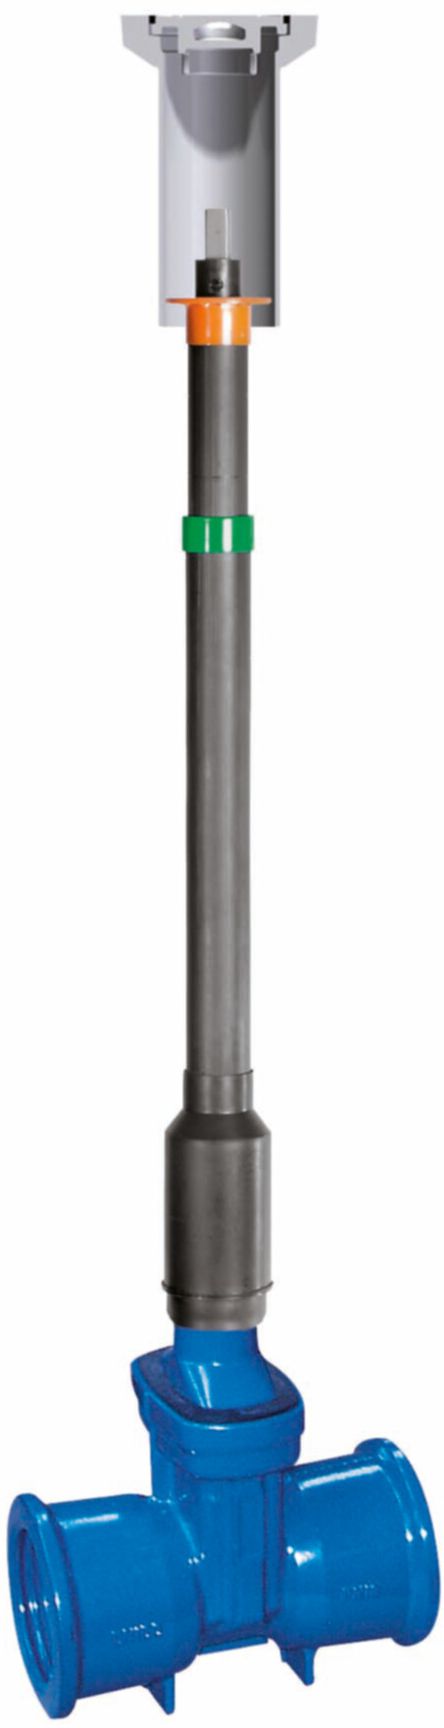 Teleskop-Einbaugarnitur Fig. 6895 L0 DN 65 GT 0,86 - 0,99m - Von Roll Armaturen